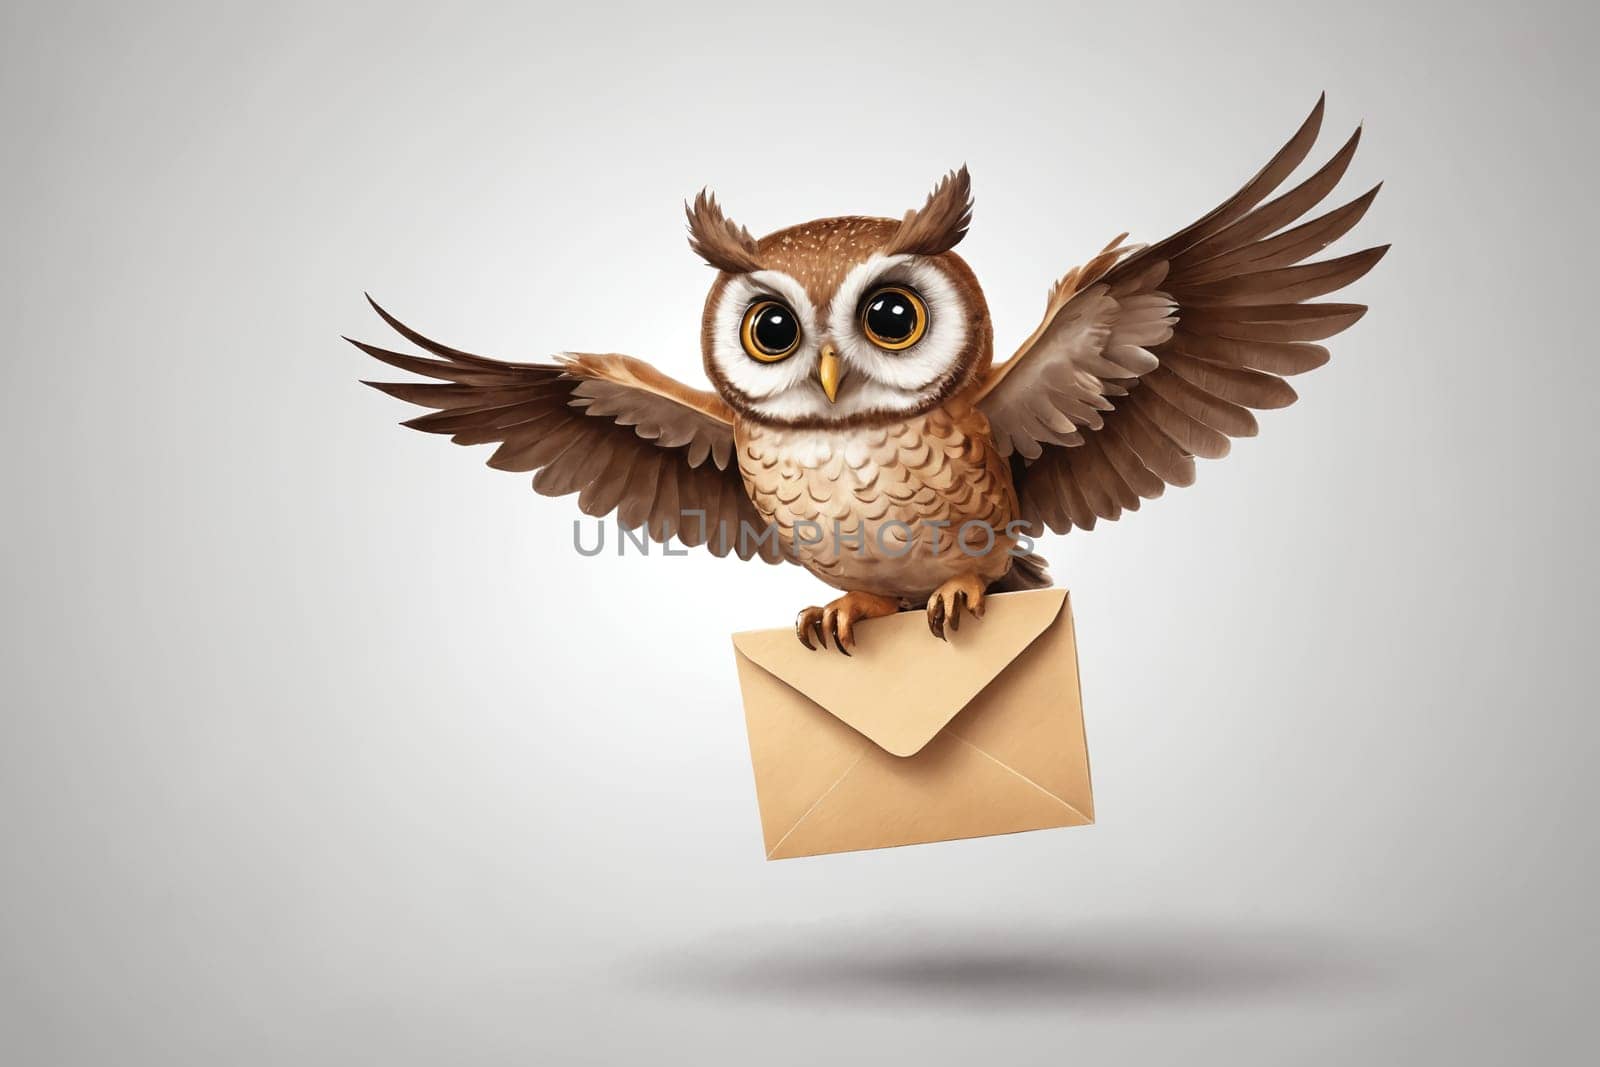 Night Messenger: Majestic Owl Delivering Envelope